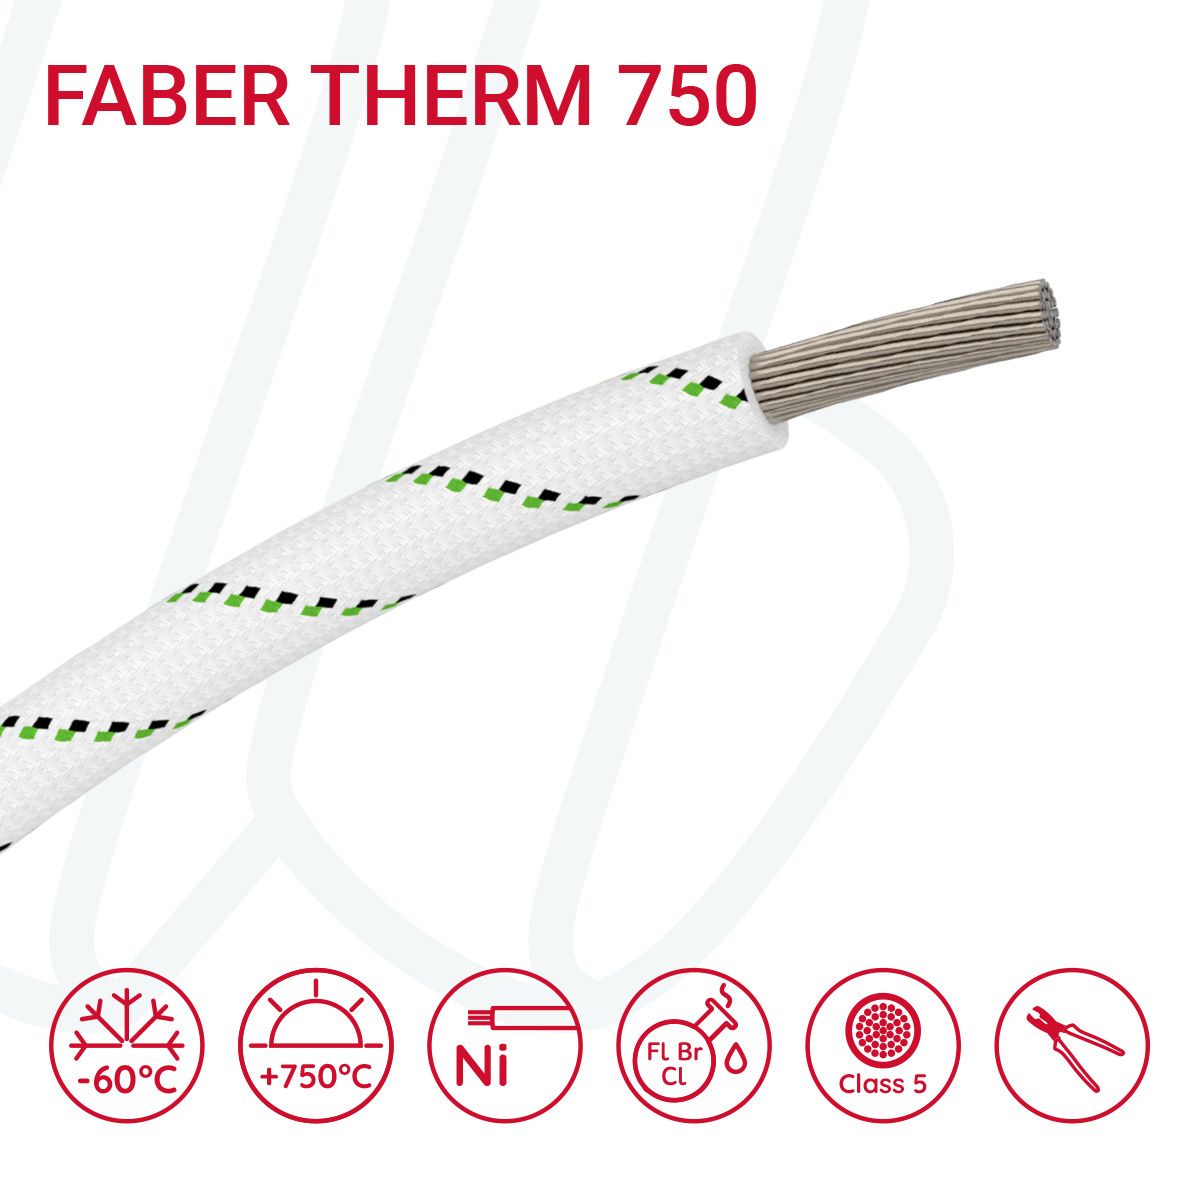 Провід термостійкий FABER THERM 750 01X25 в плетінні з чорною та зеленою ниткою, 01, 25